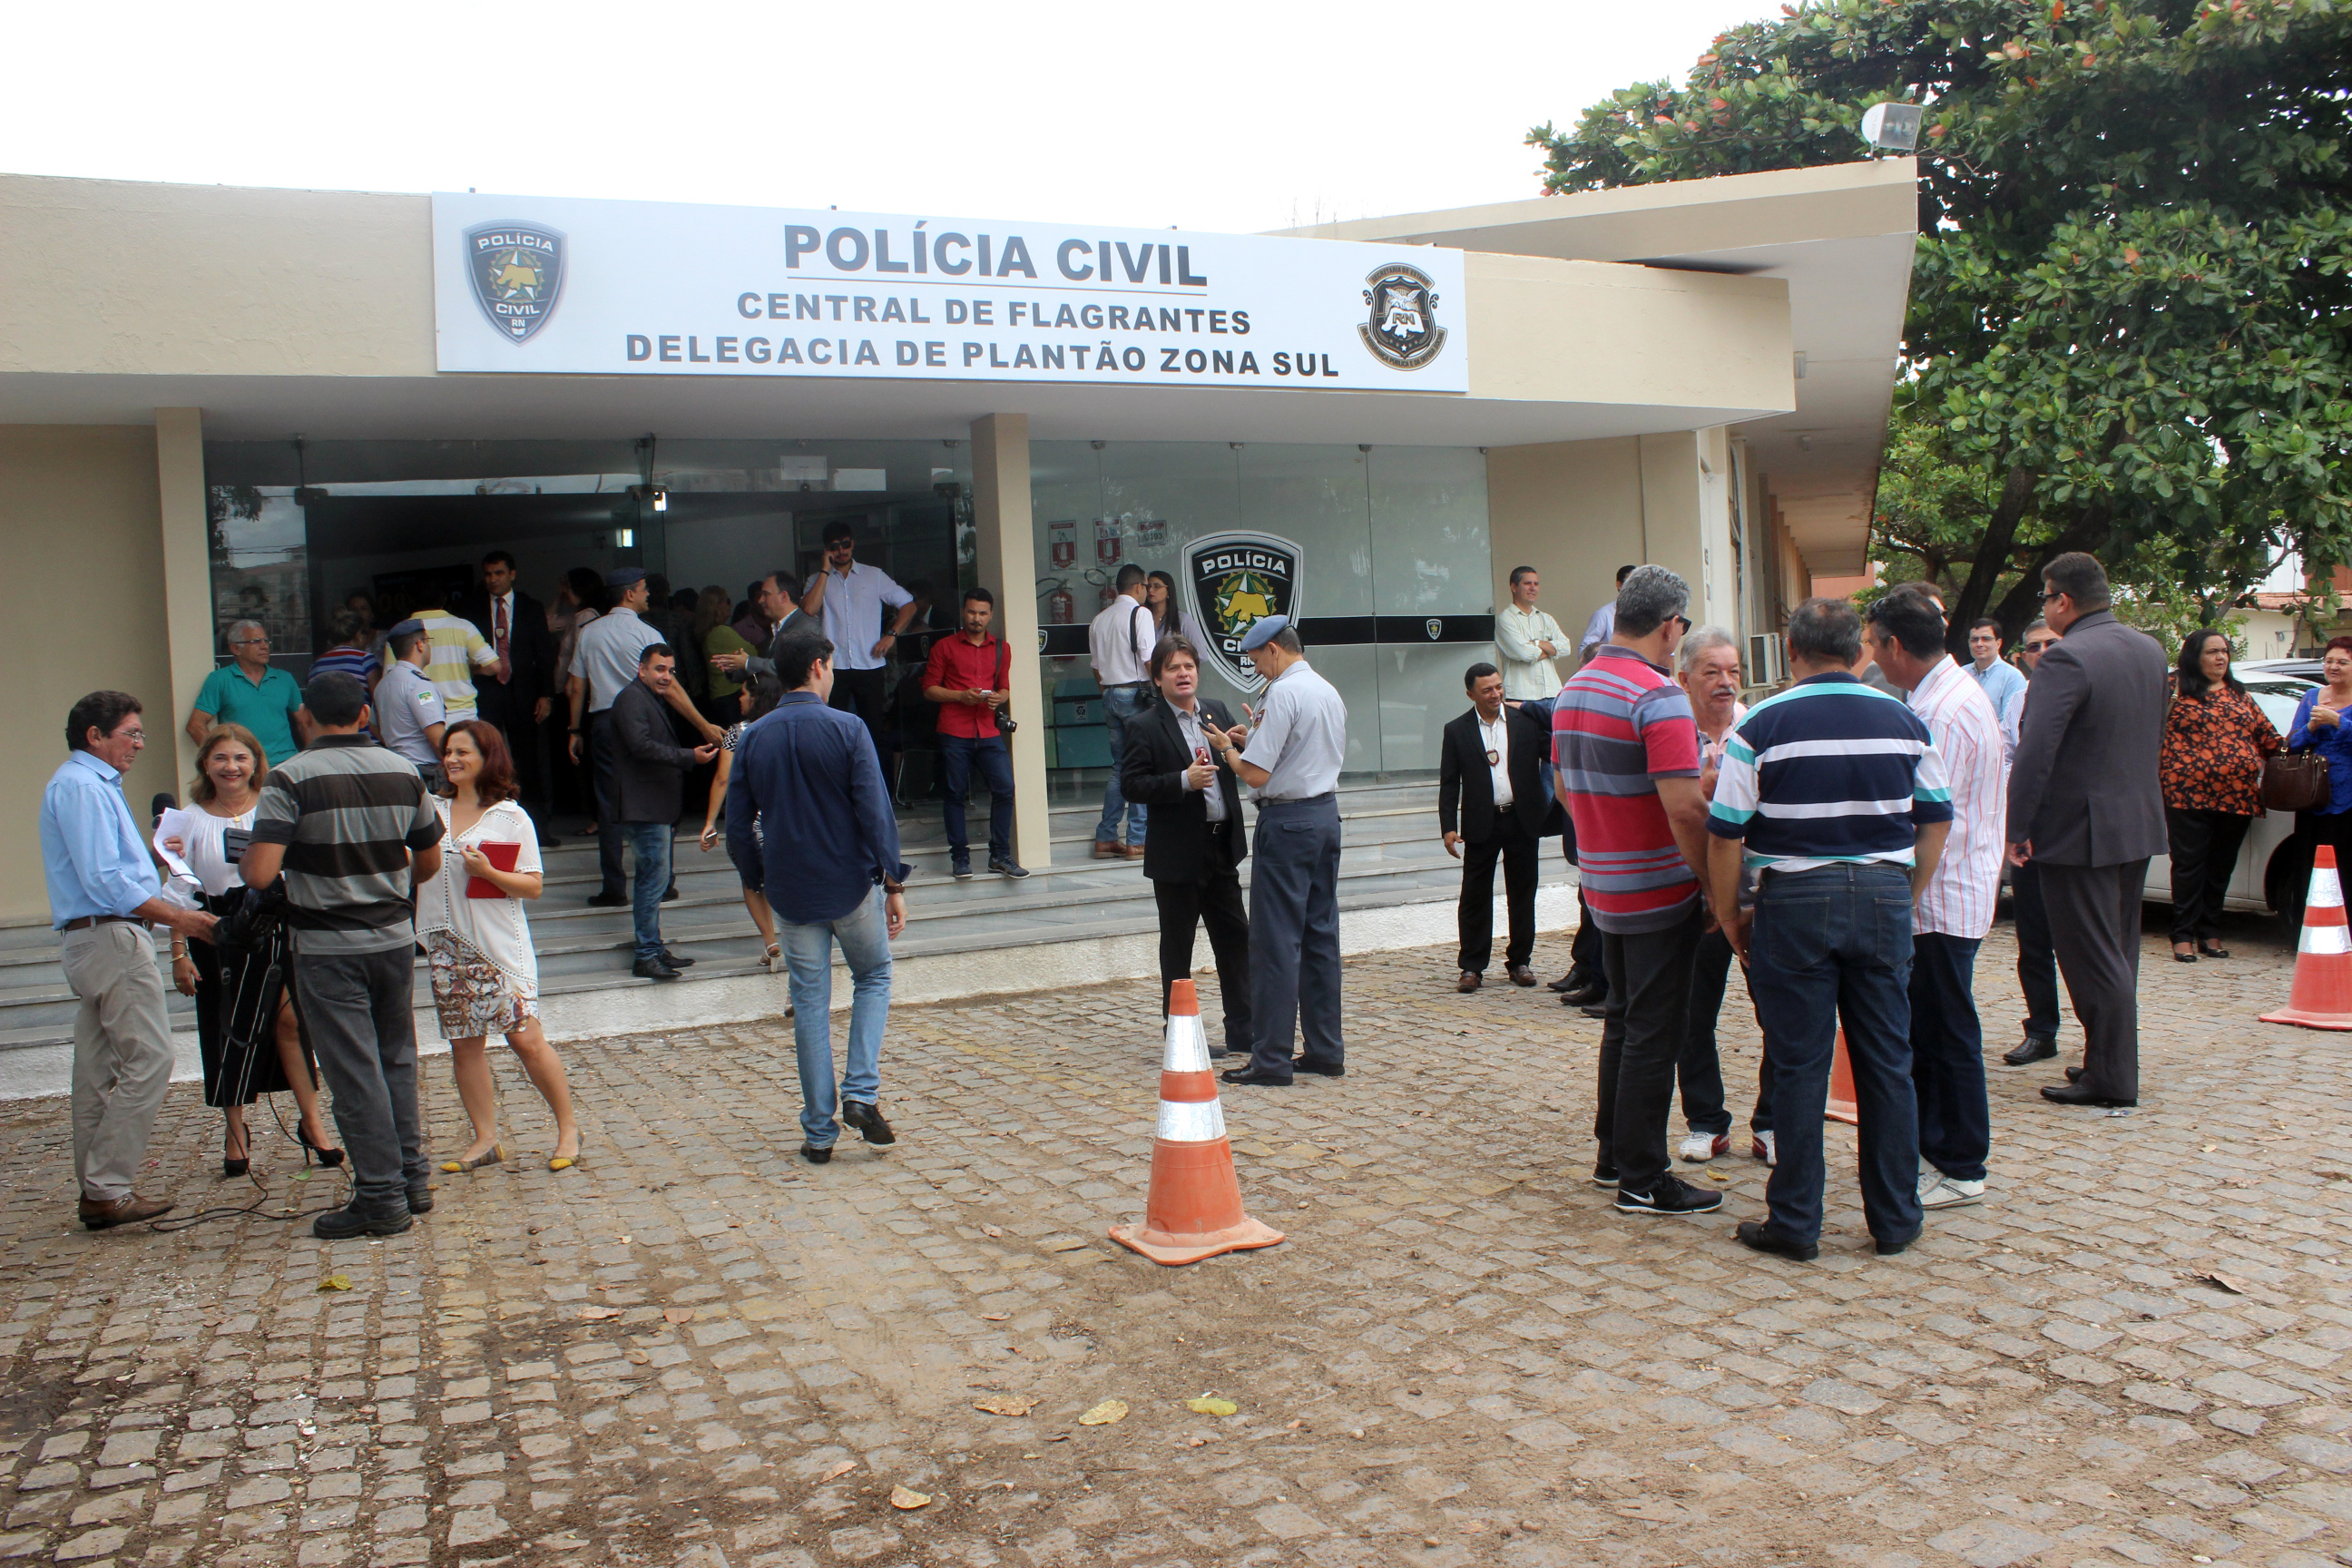 Polícia Civil do RN inaugura Central de Flagrantes 24 horas - Blog do BG